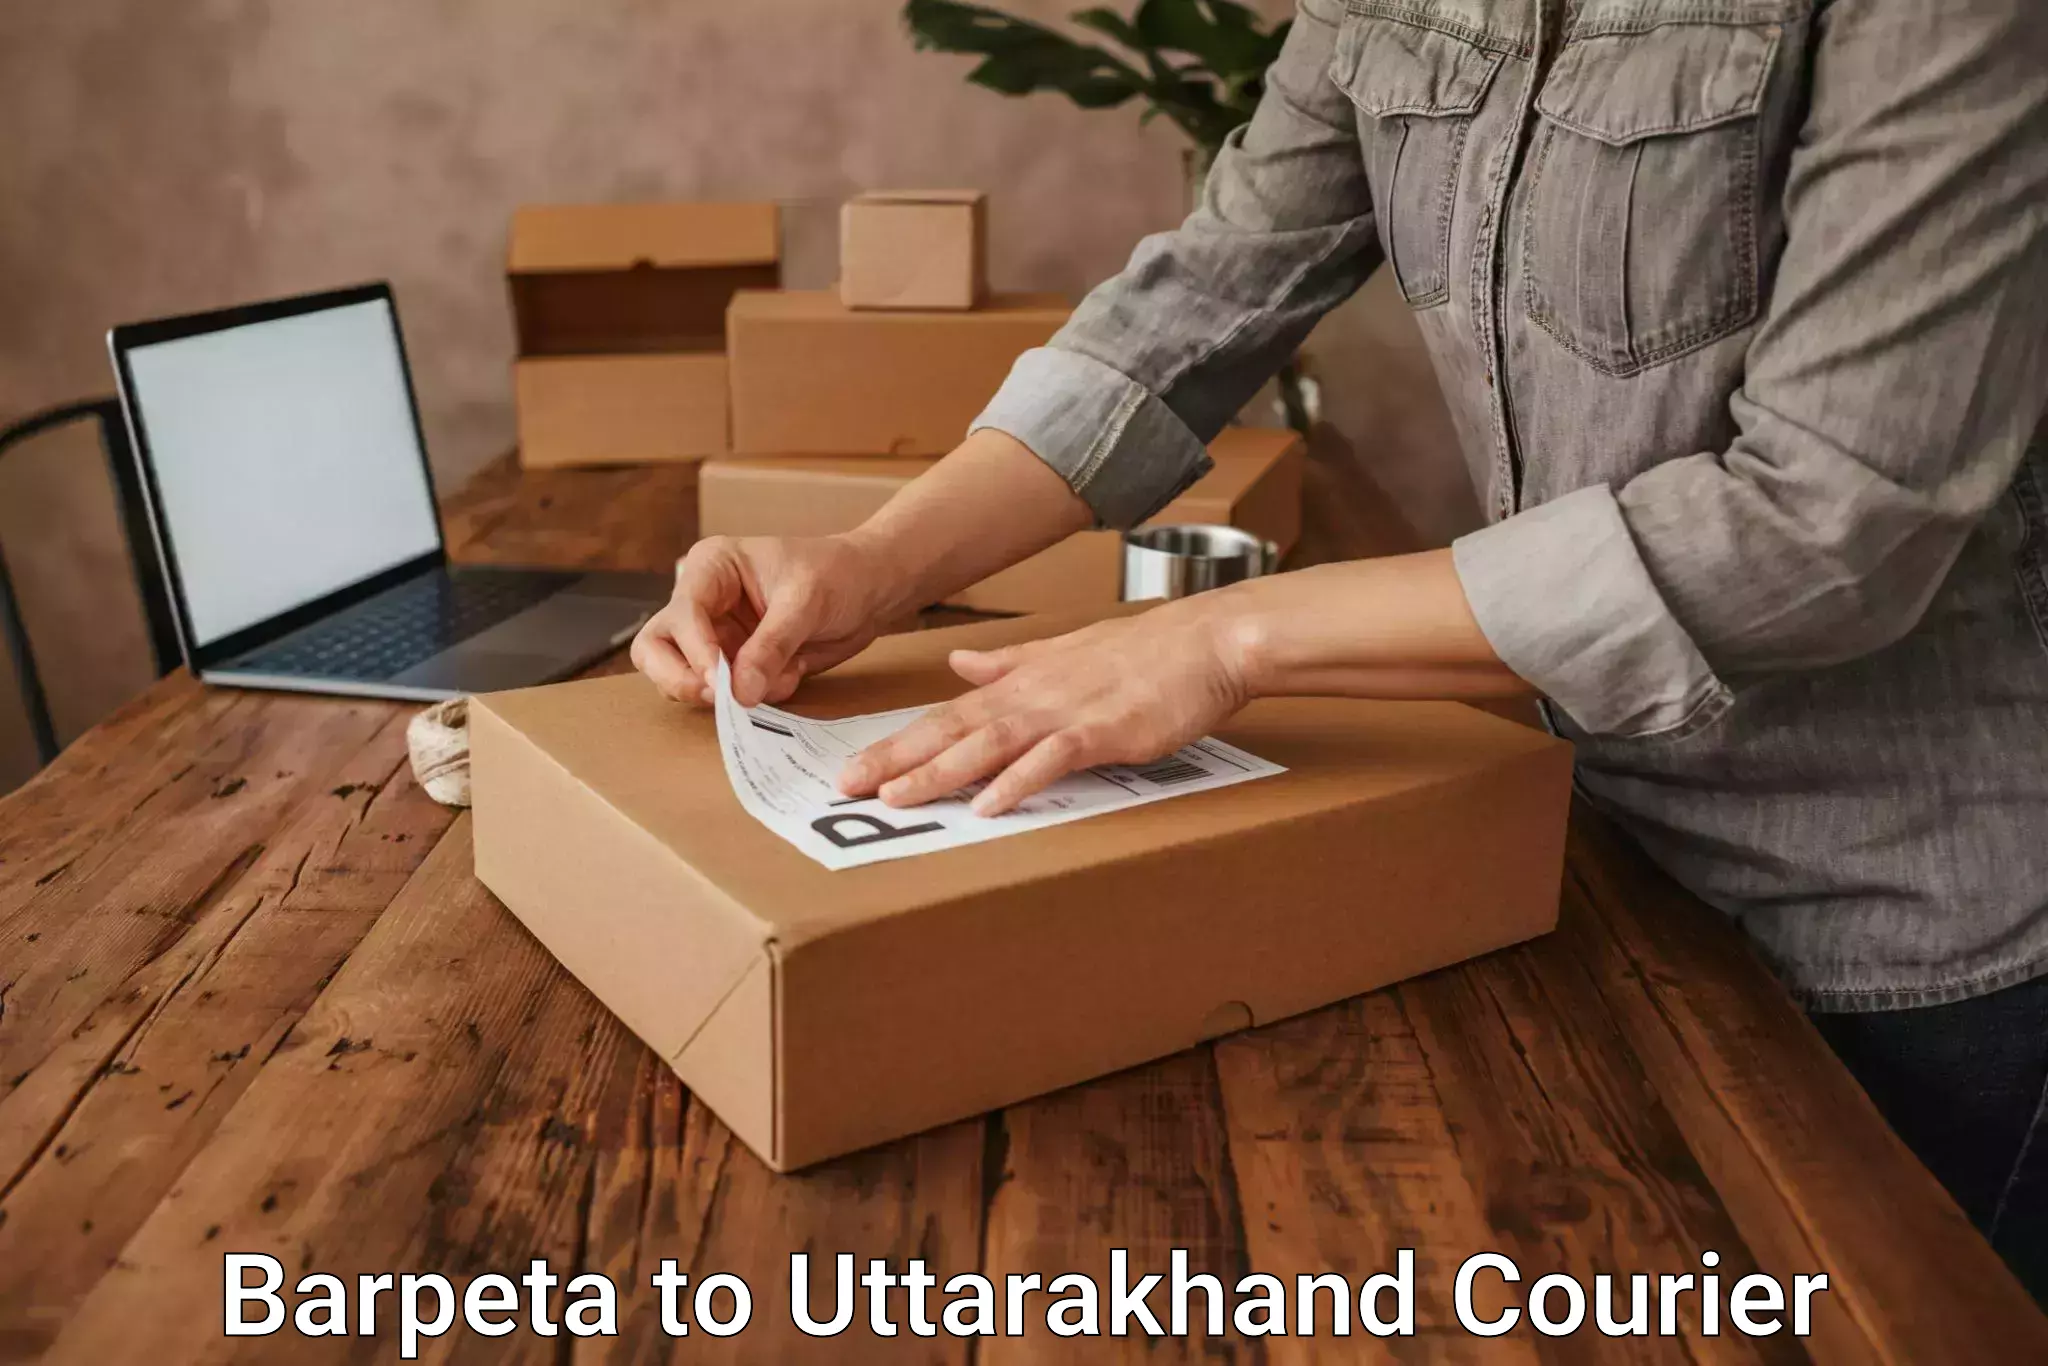 Reliable courier service Barpeta to Dehradun